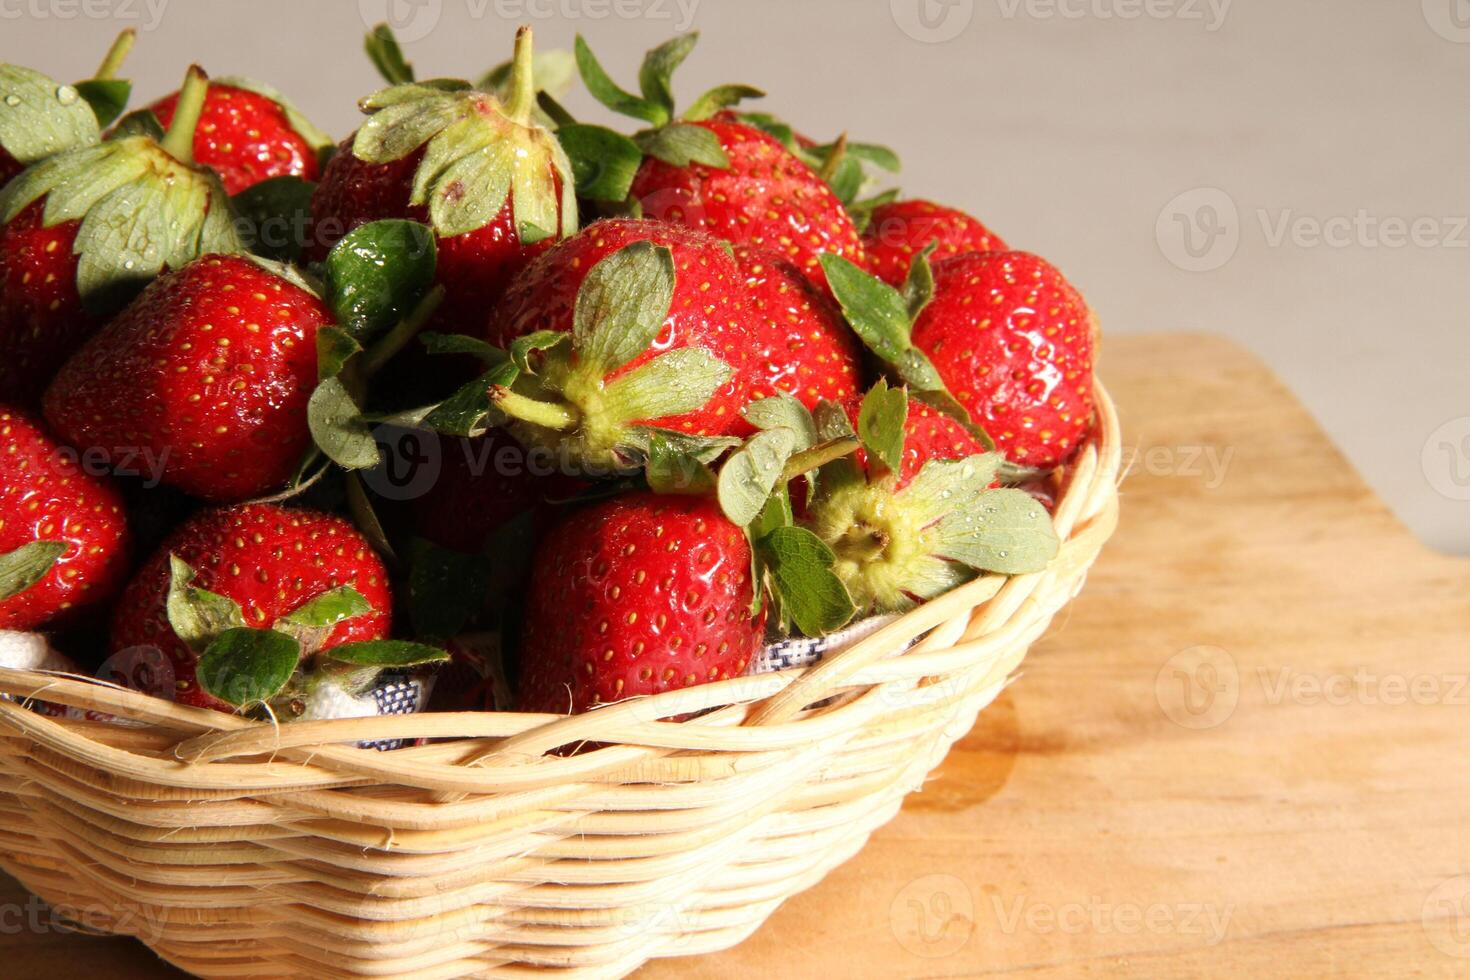 en korg av jordgubbar på en trä- skära styrelse på vit bakgrund foto